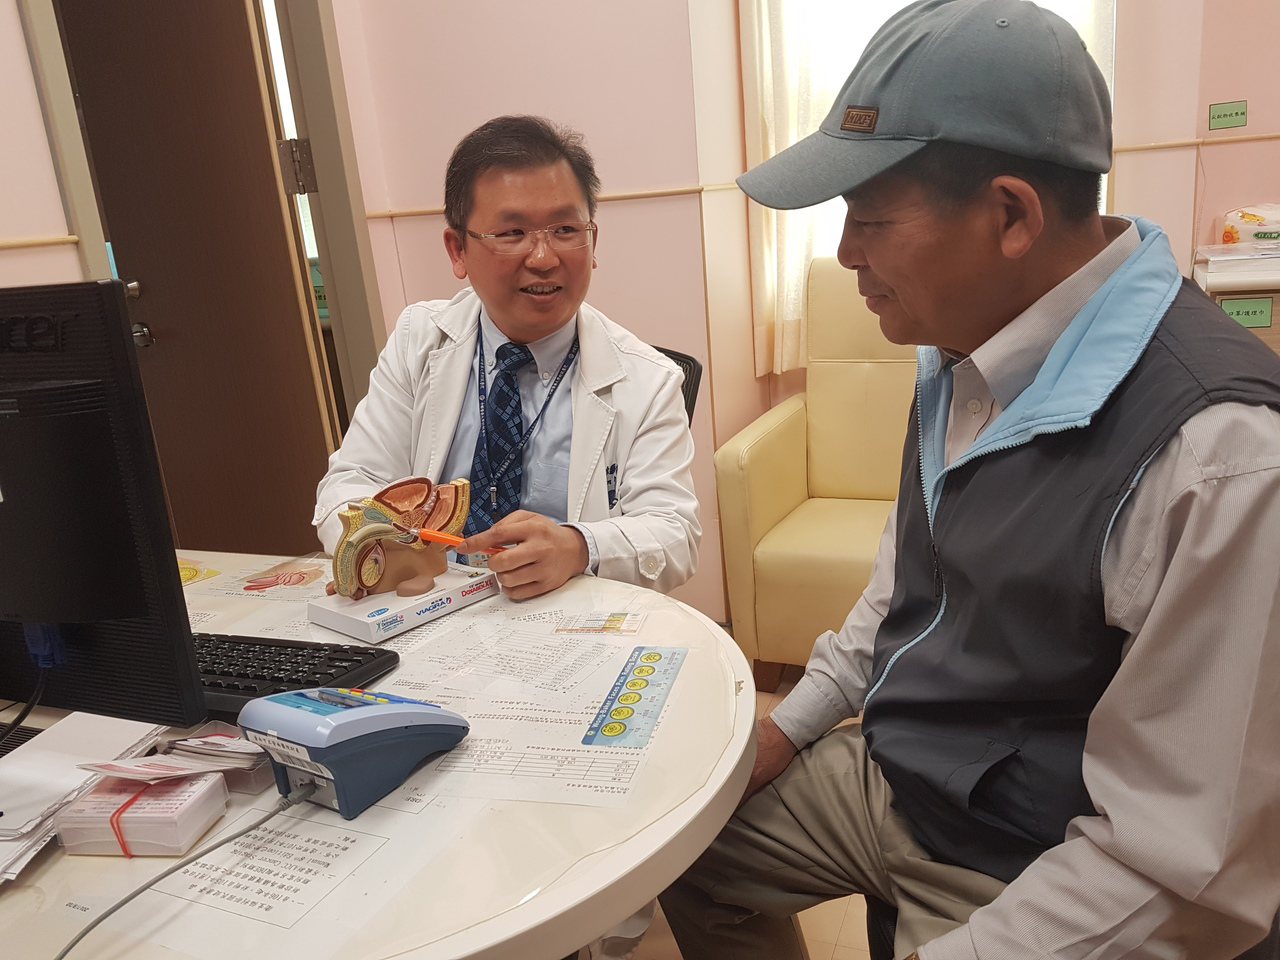 安南醫院泌尿科提醒大家注意攝護腺肥大 與感冒藥間的關聯 記者修瑞瑩/攝影